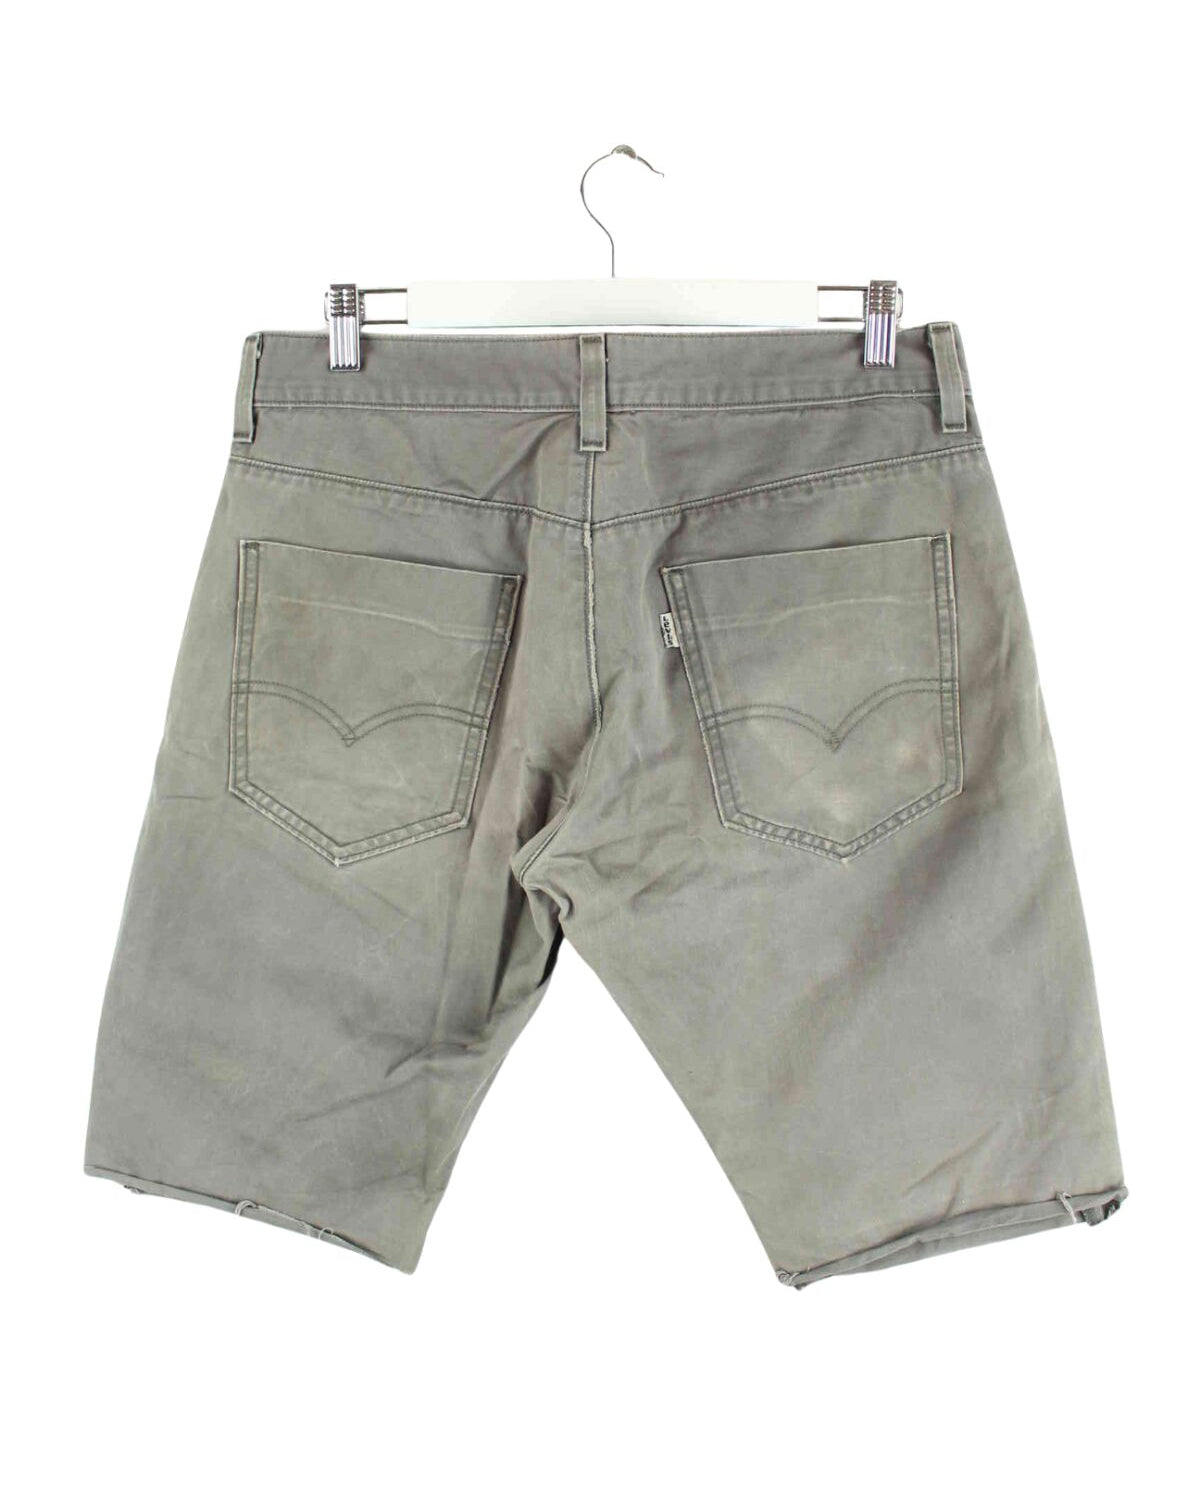 Levi's 511 White Tab Chino Shorts Grau W32 (back image)